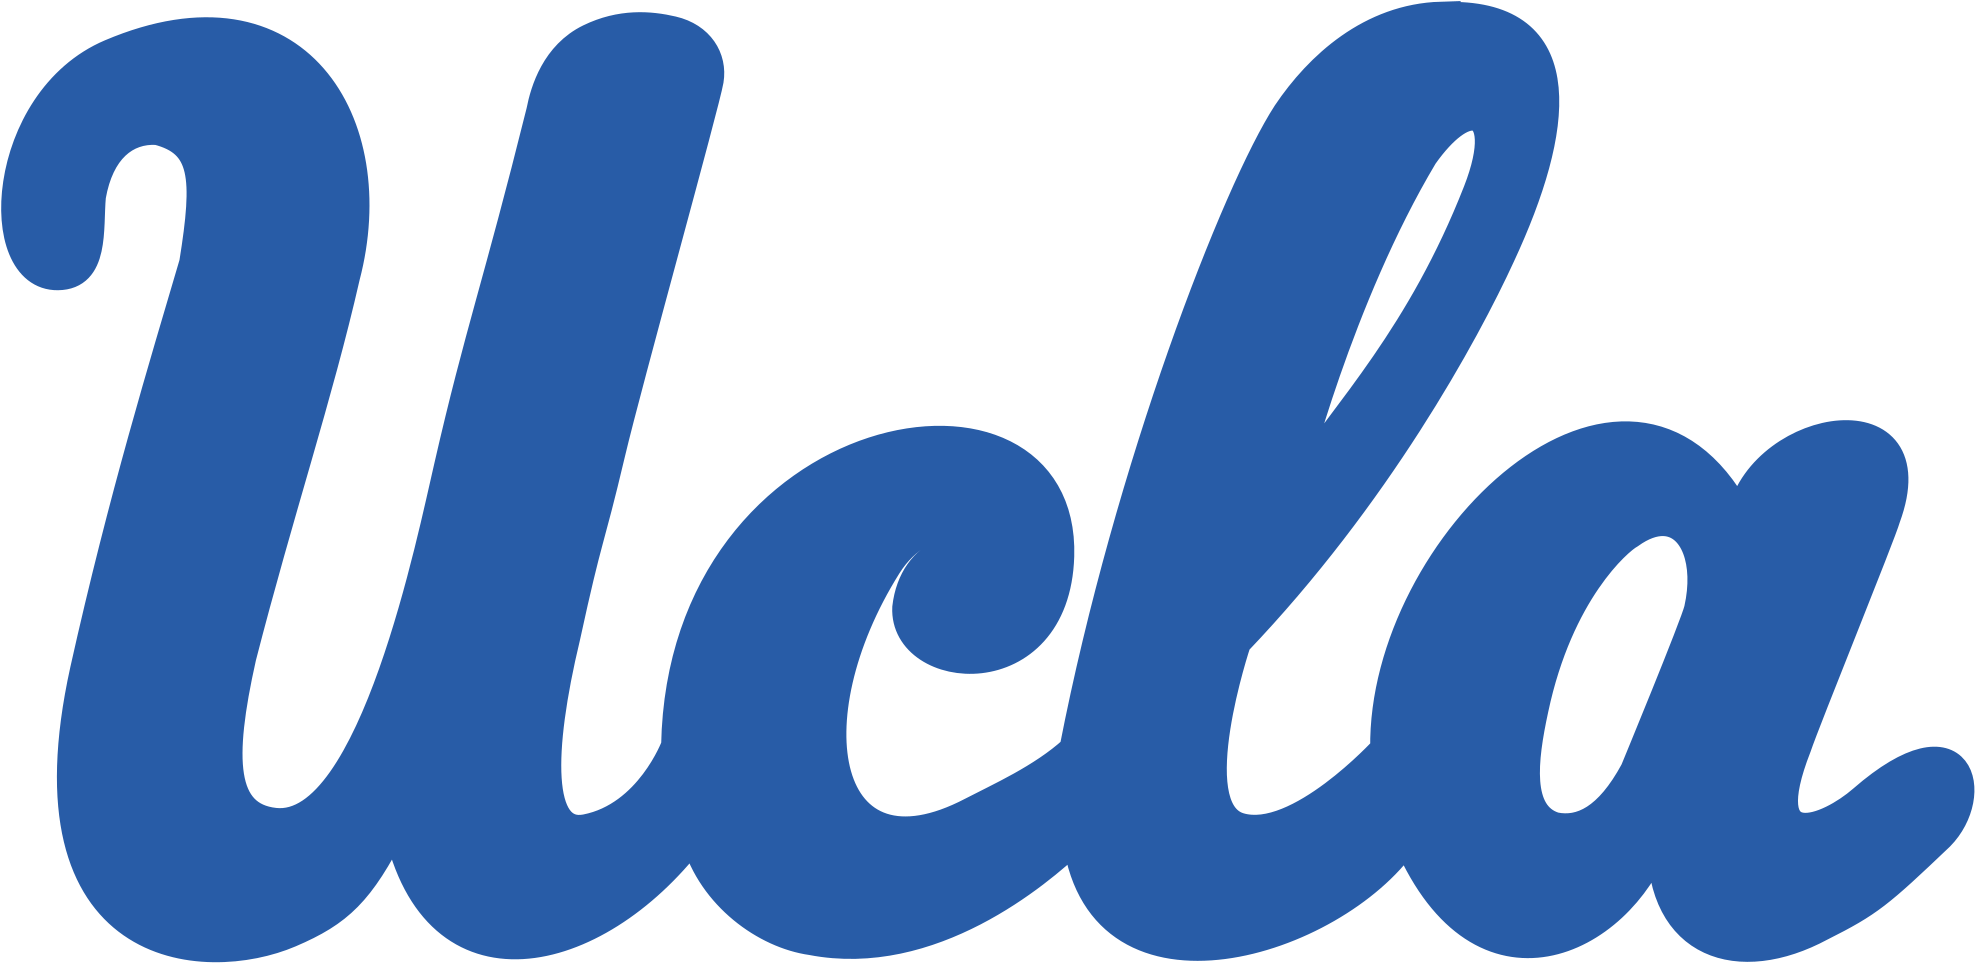 Ucla Logo Ucla Symbol Meaning History And Evolution - University California Los Angeles Ucla Logo (2400x1250)